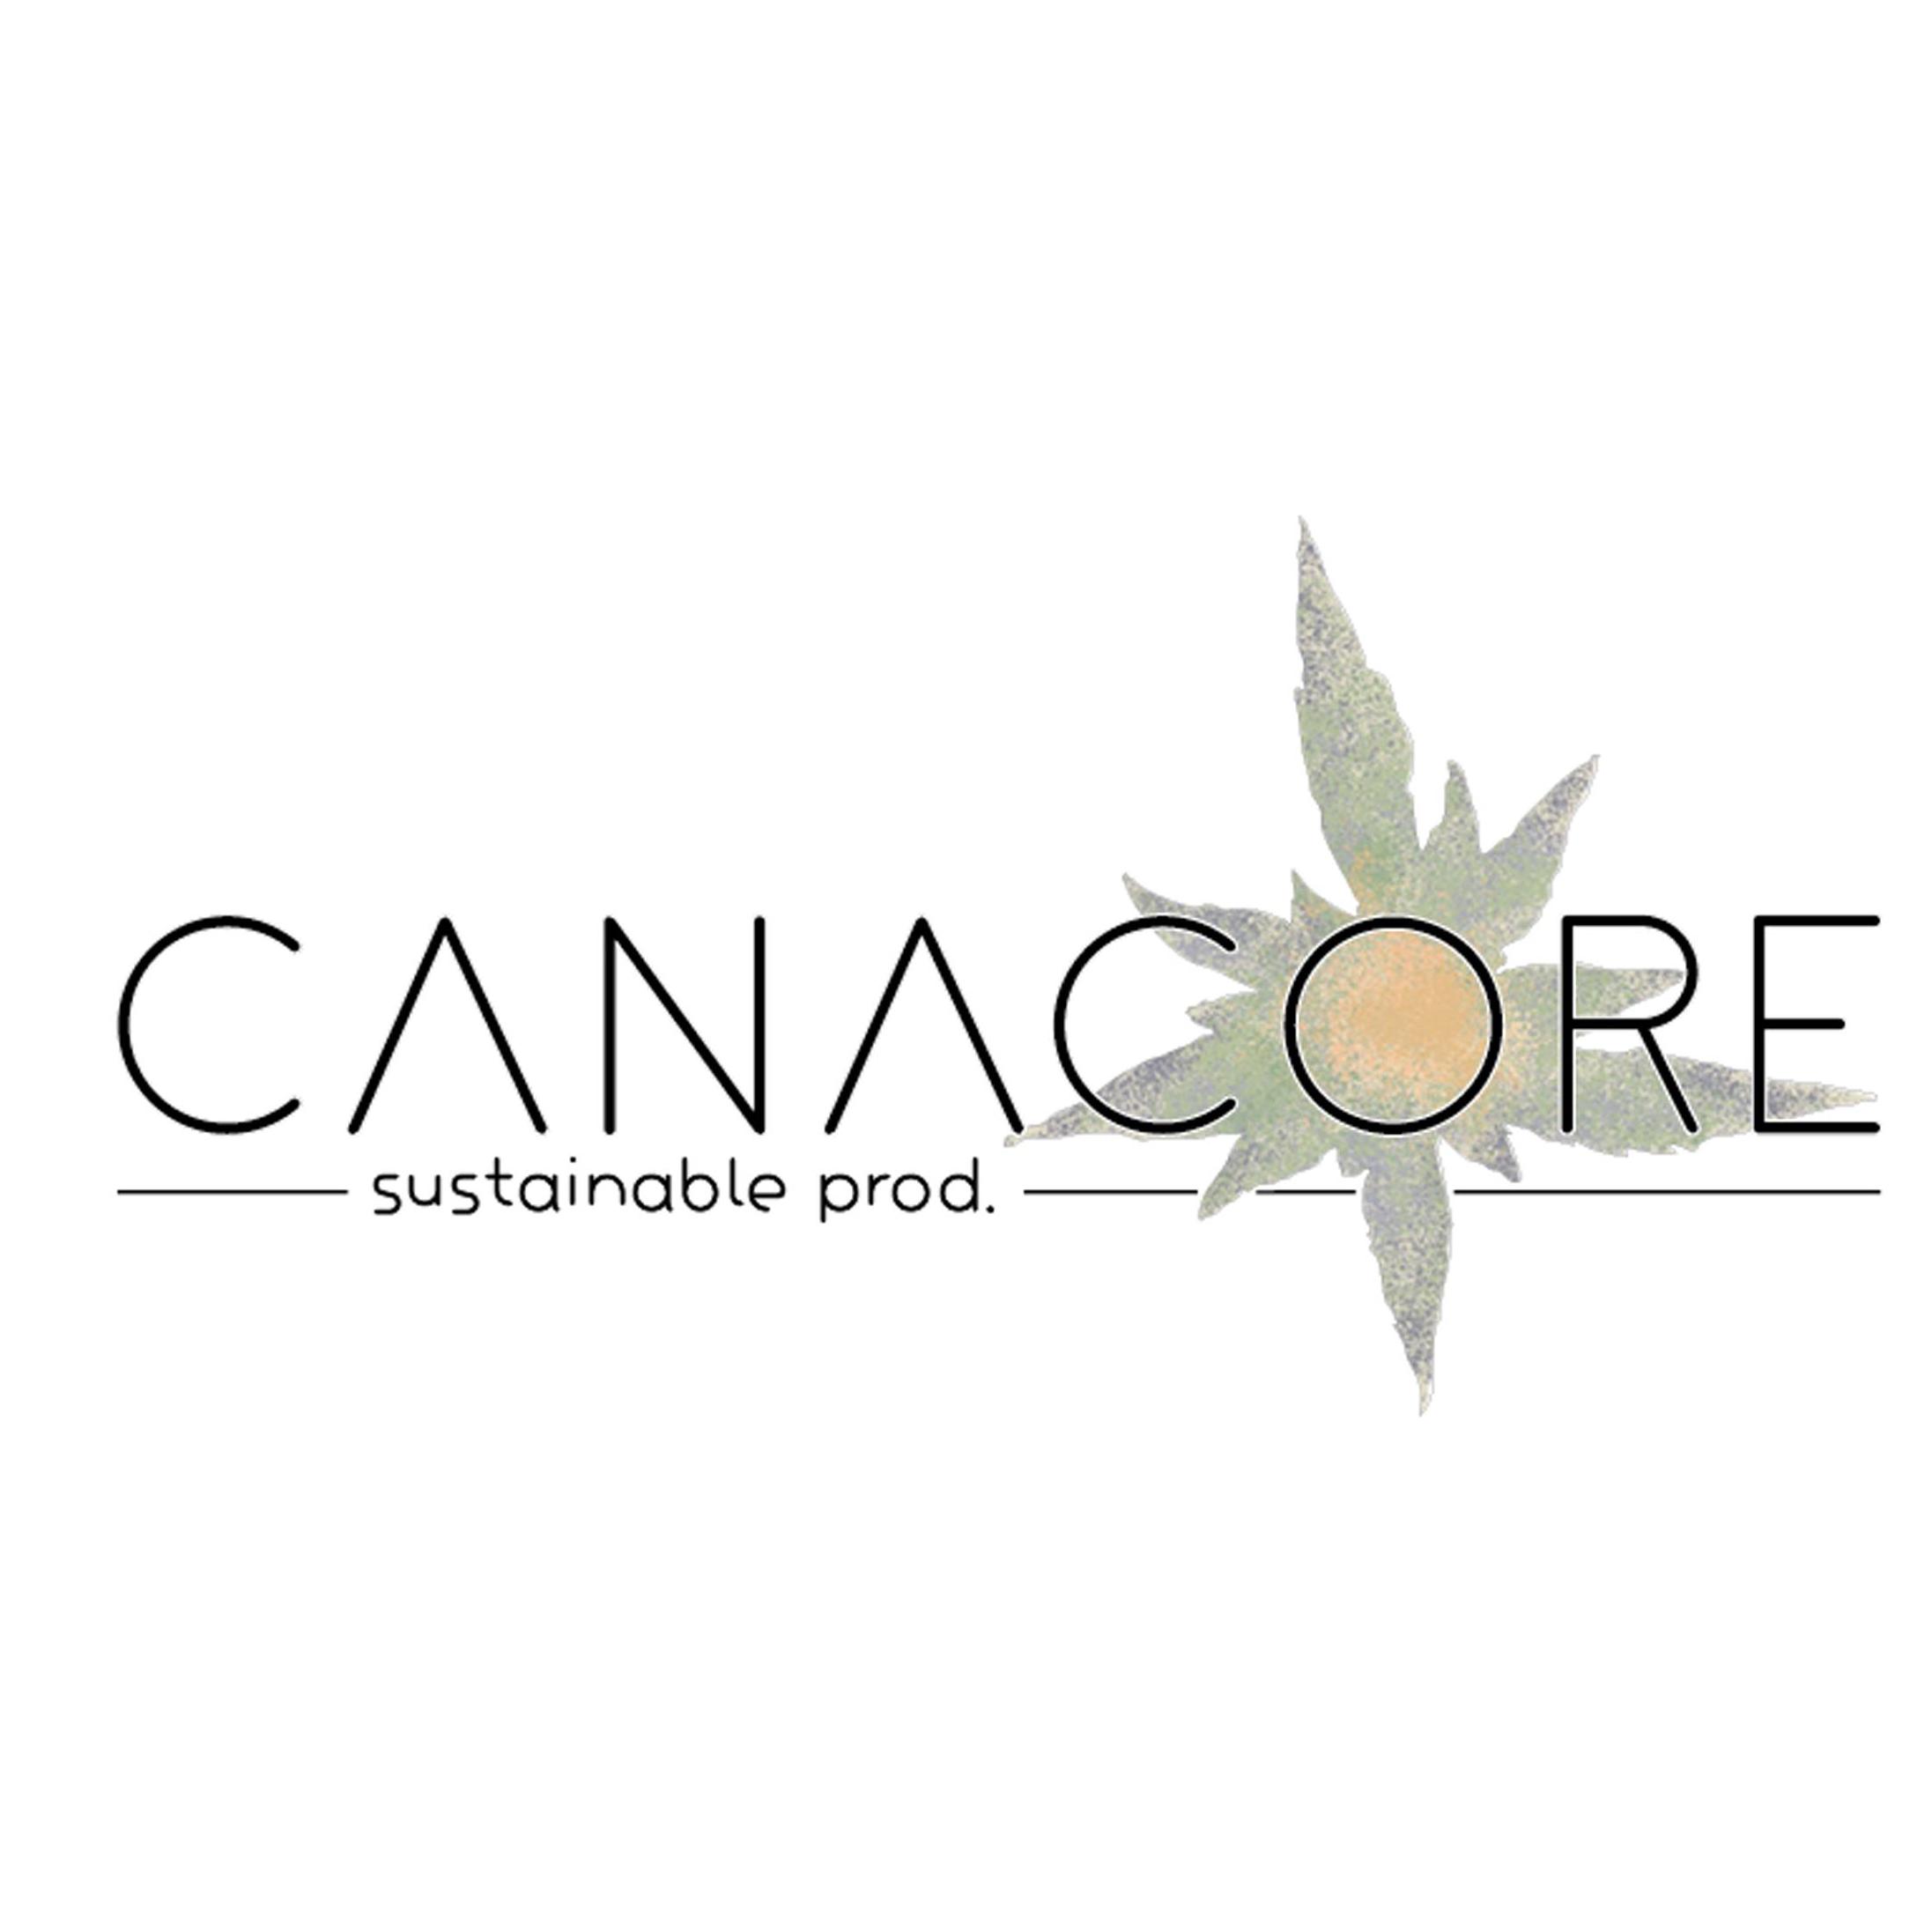 CANACORE sustainable prod.